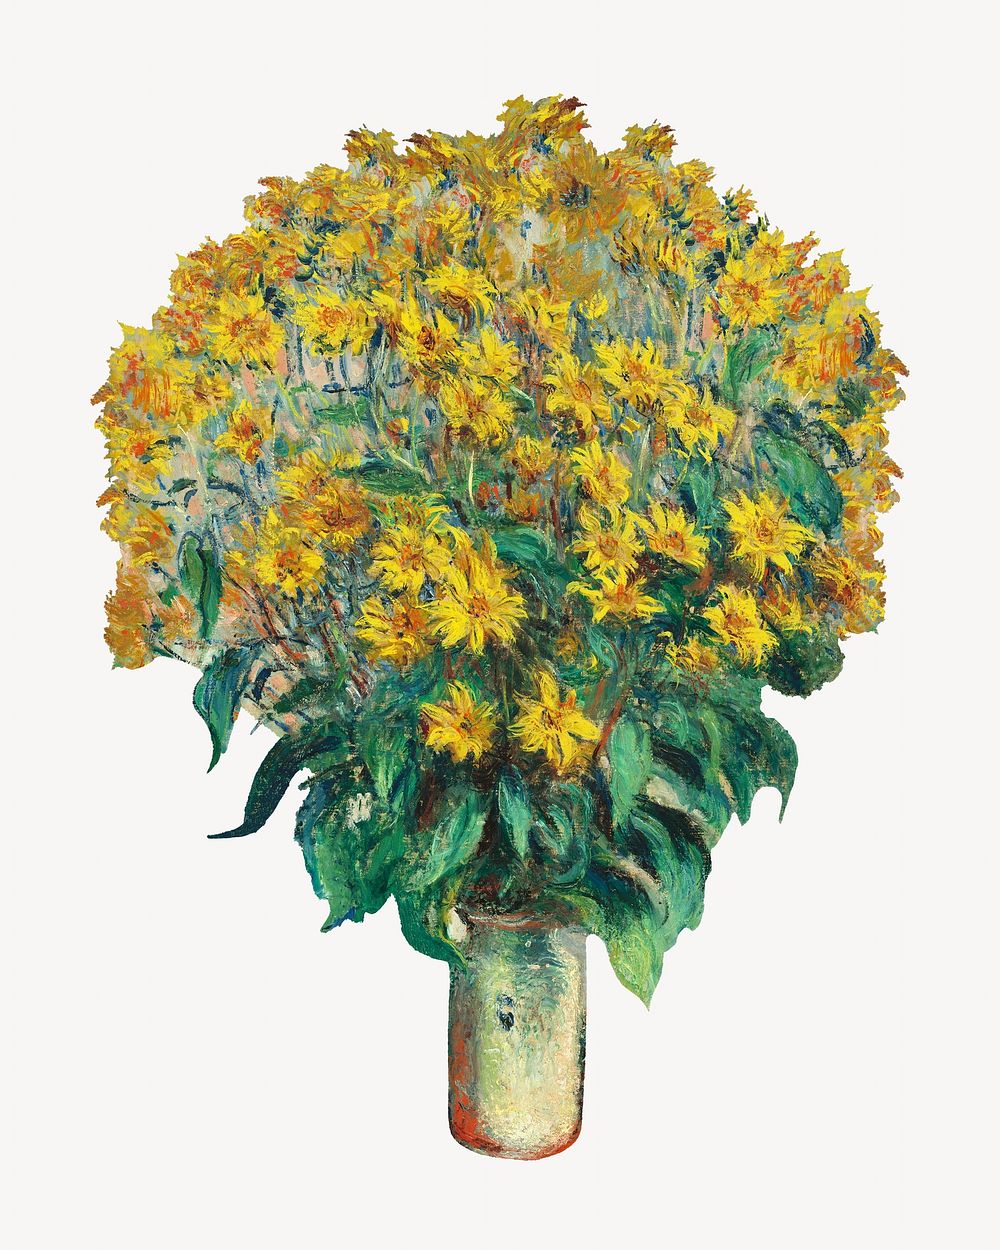 Claude Monet's Jerusalem Artichoke Flowers, remixed by rawpixel